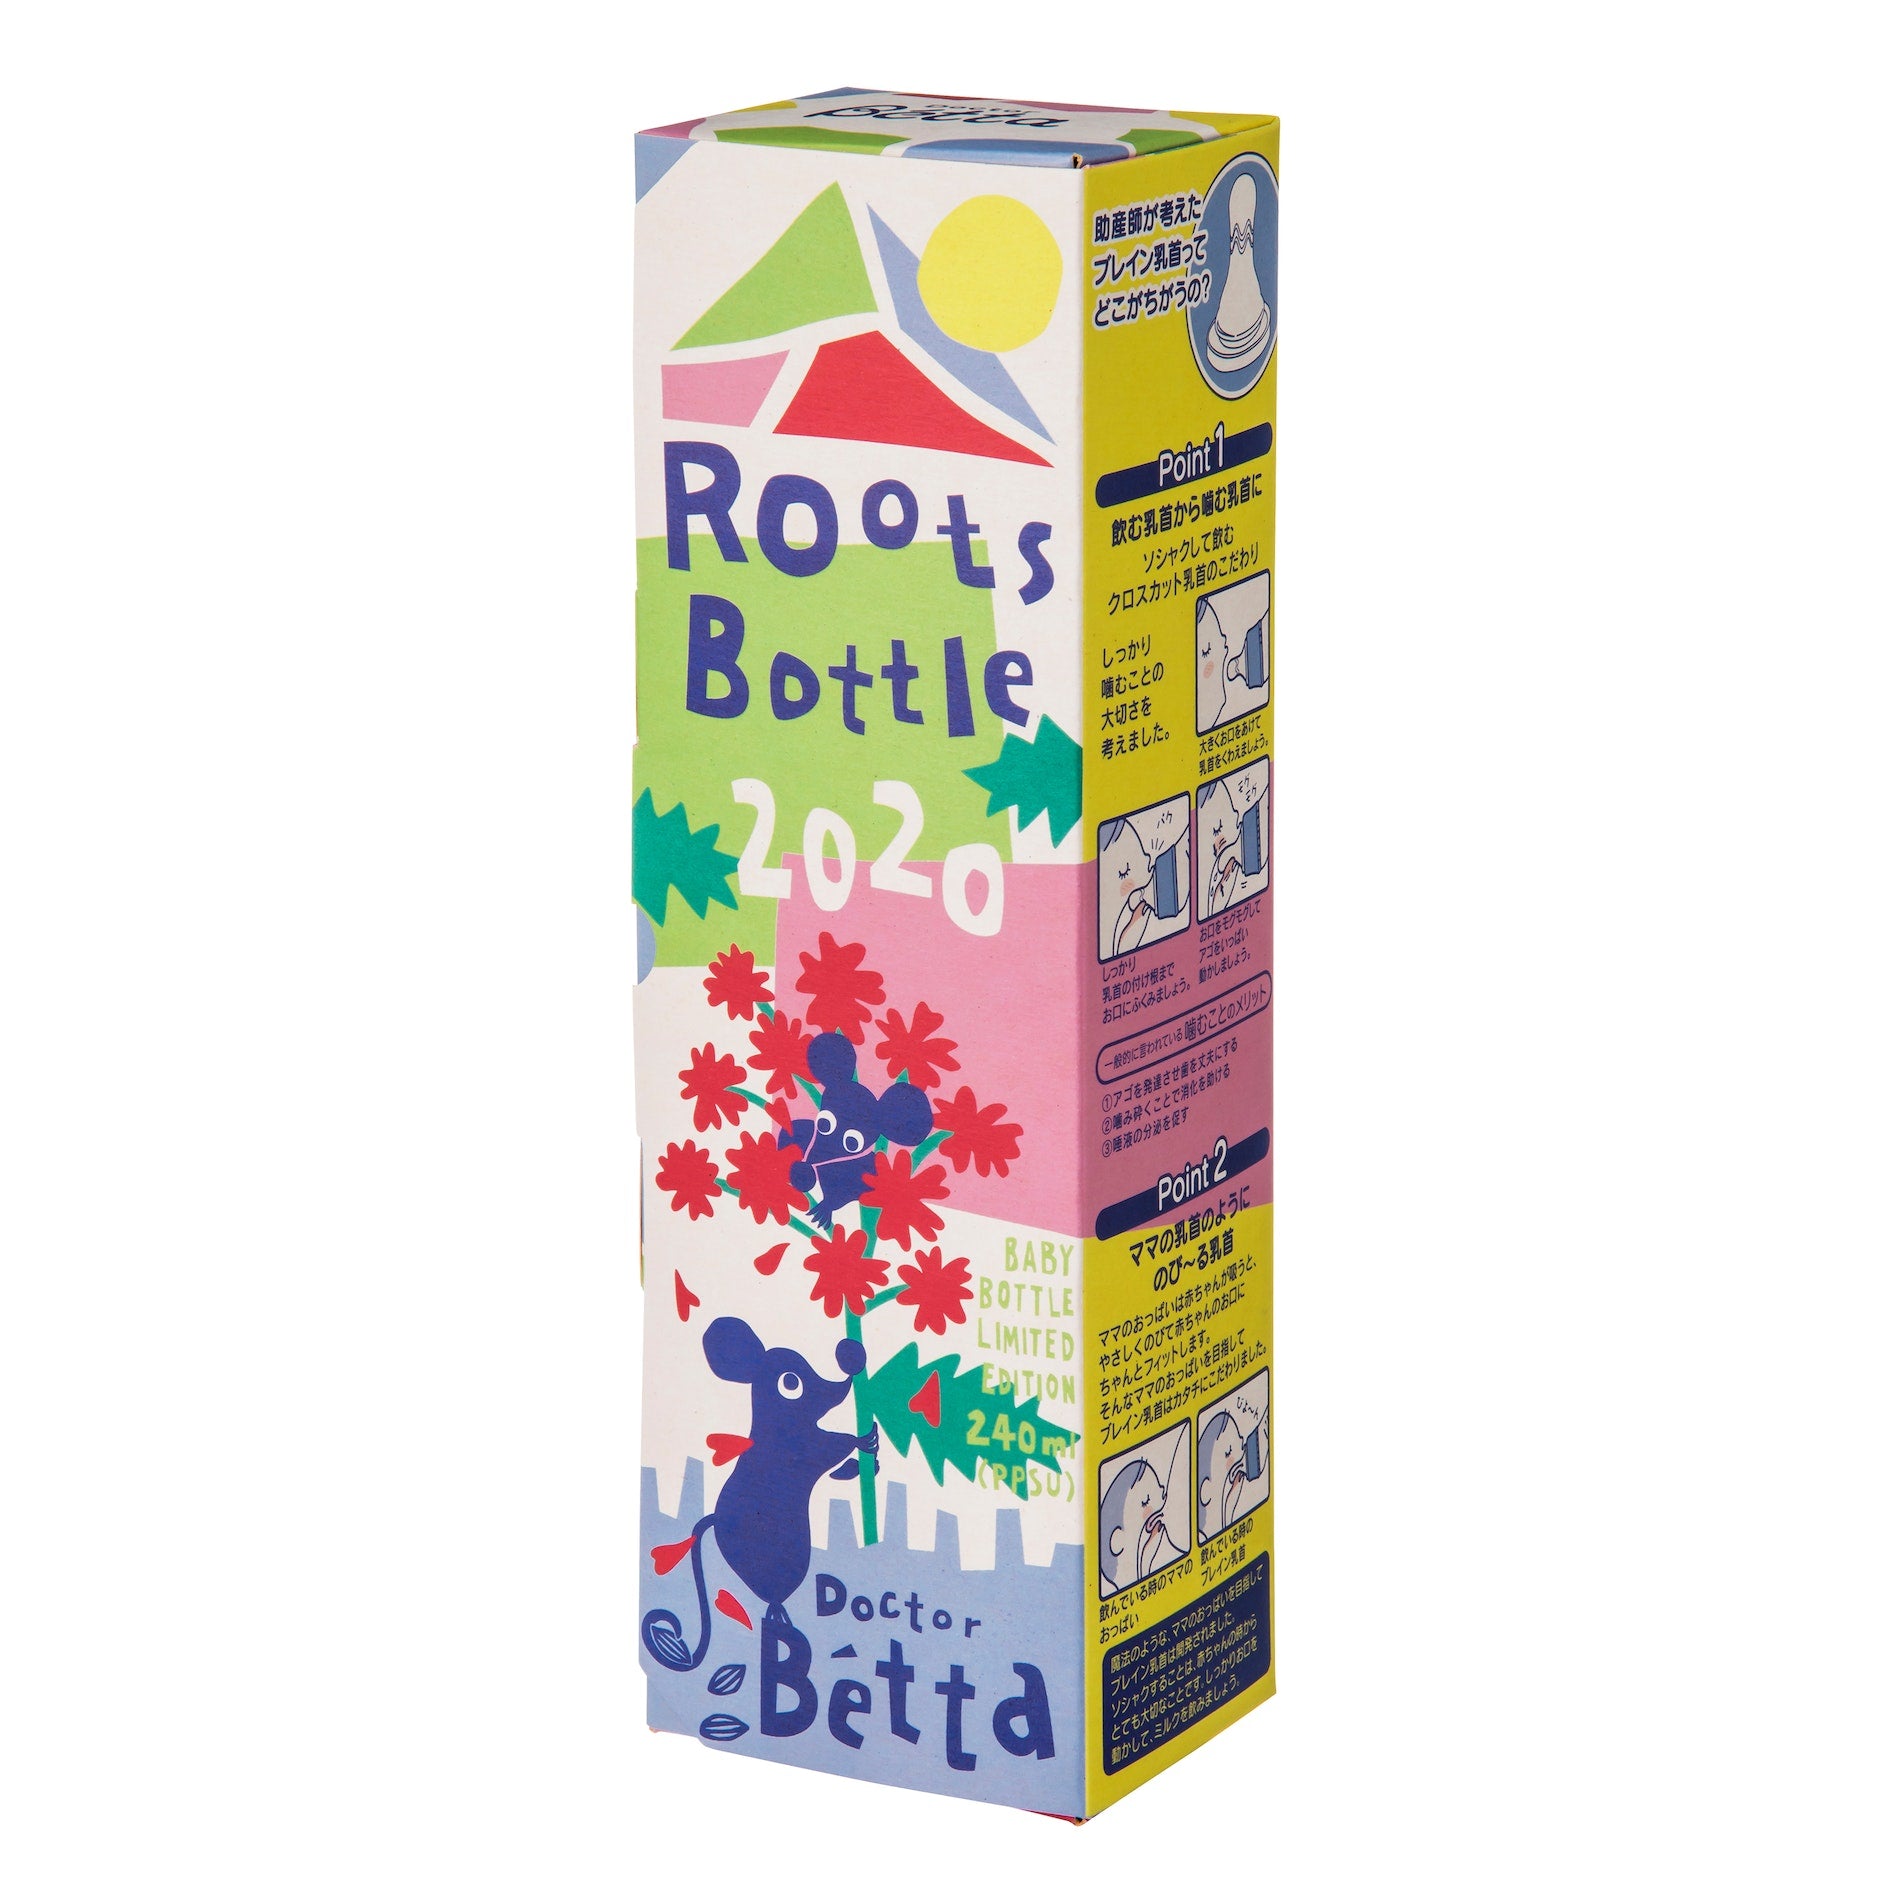 PPSU 240ml Doctor Bétta Baby Bottle / Brain RootsBottle-240ml